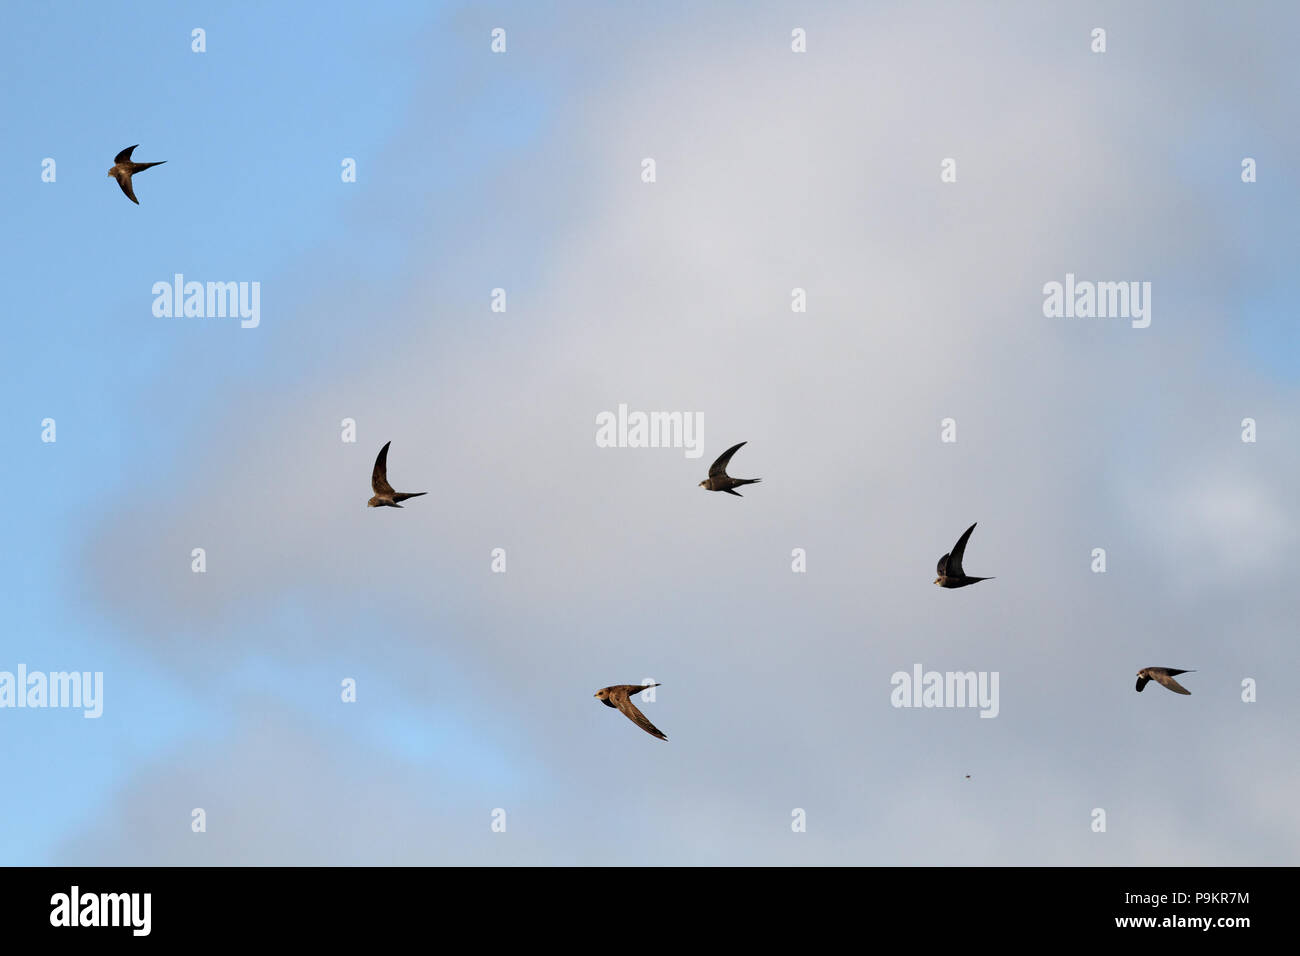 Parecchie rondini in volo contro il cielo nuvoloso (aggiunto alcuni più rondini all'immagine originale) Foto Stock